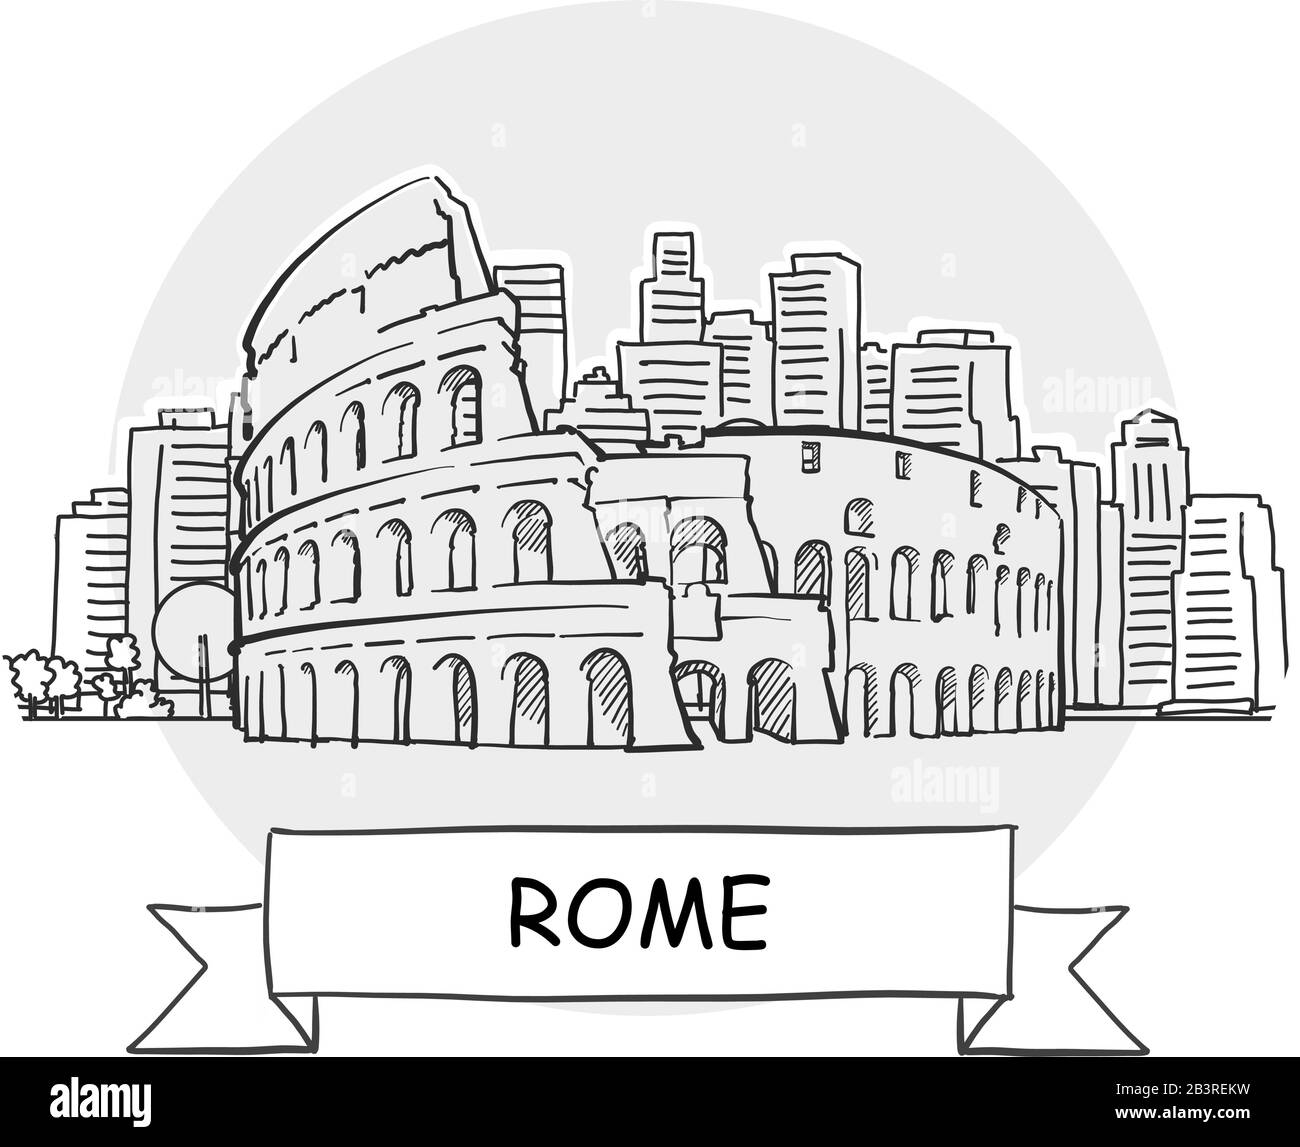 Roma Disegnato A Mano Urban Vector Sign. Illustrazione Della Linea Nera Con Barra Multifunzione E Titolo. Illustrazione Vettoriale